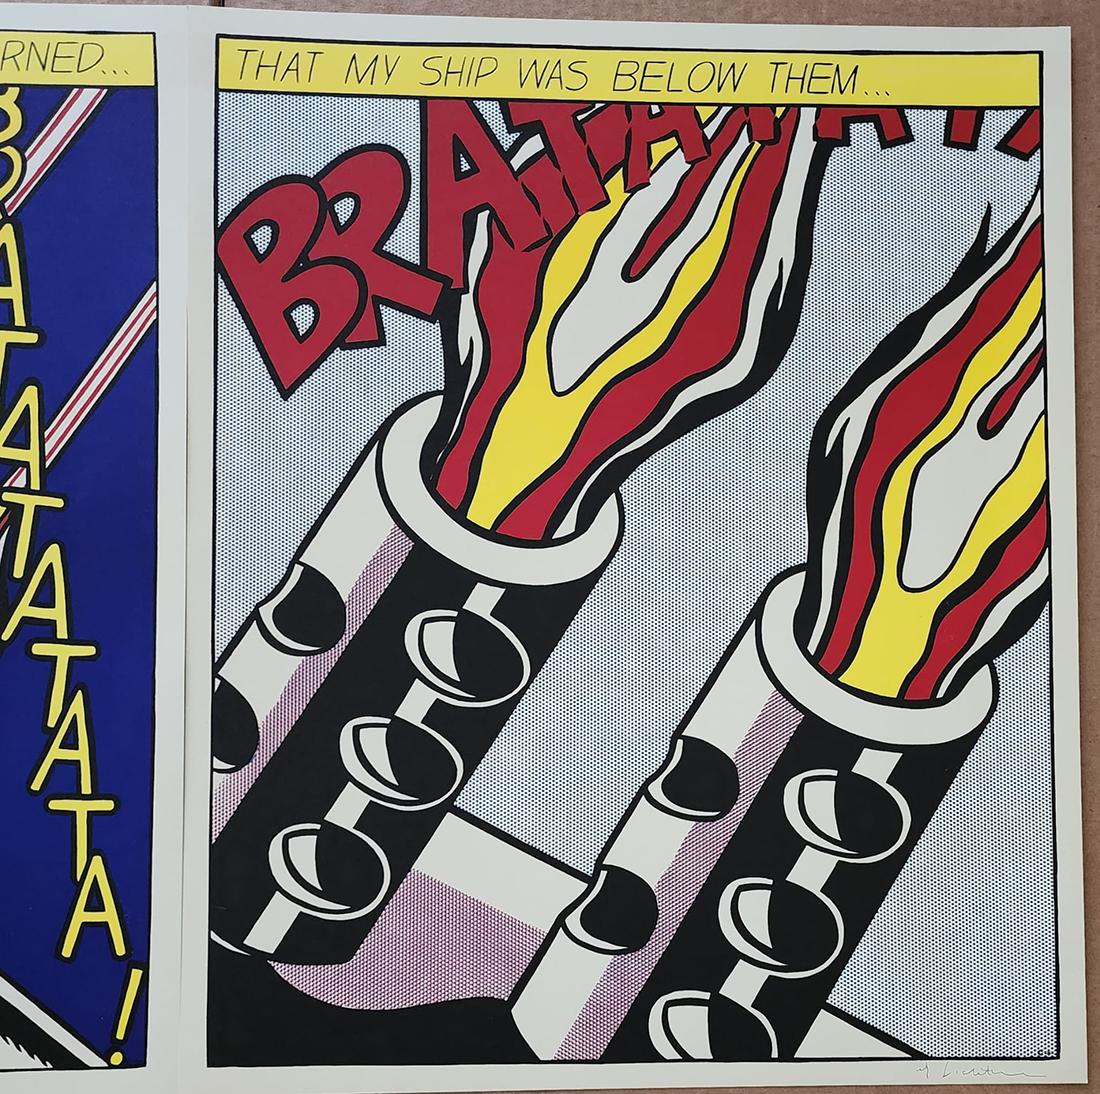 Artist: Roy Lichtenstein (American, 1923-1997)
Title: 